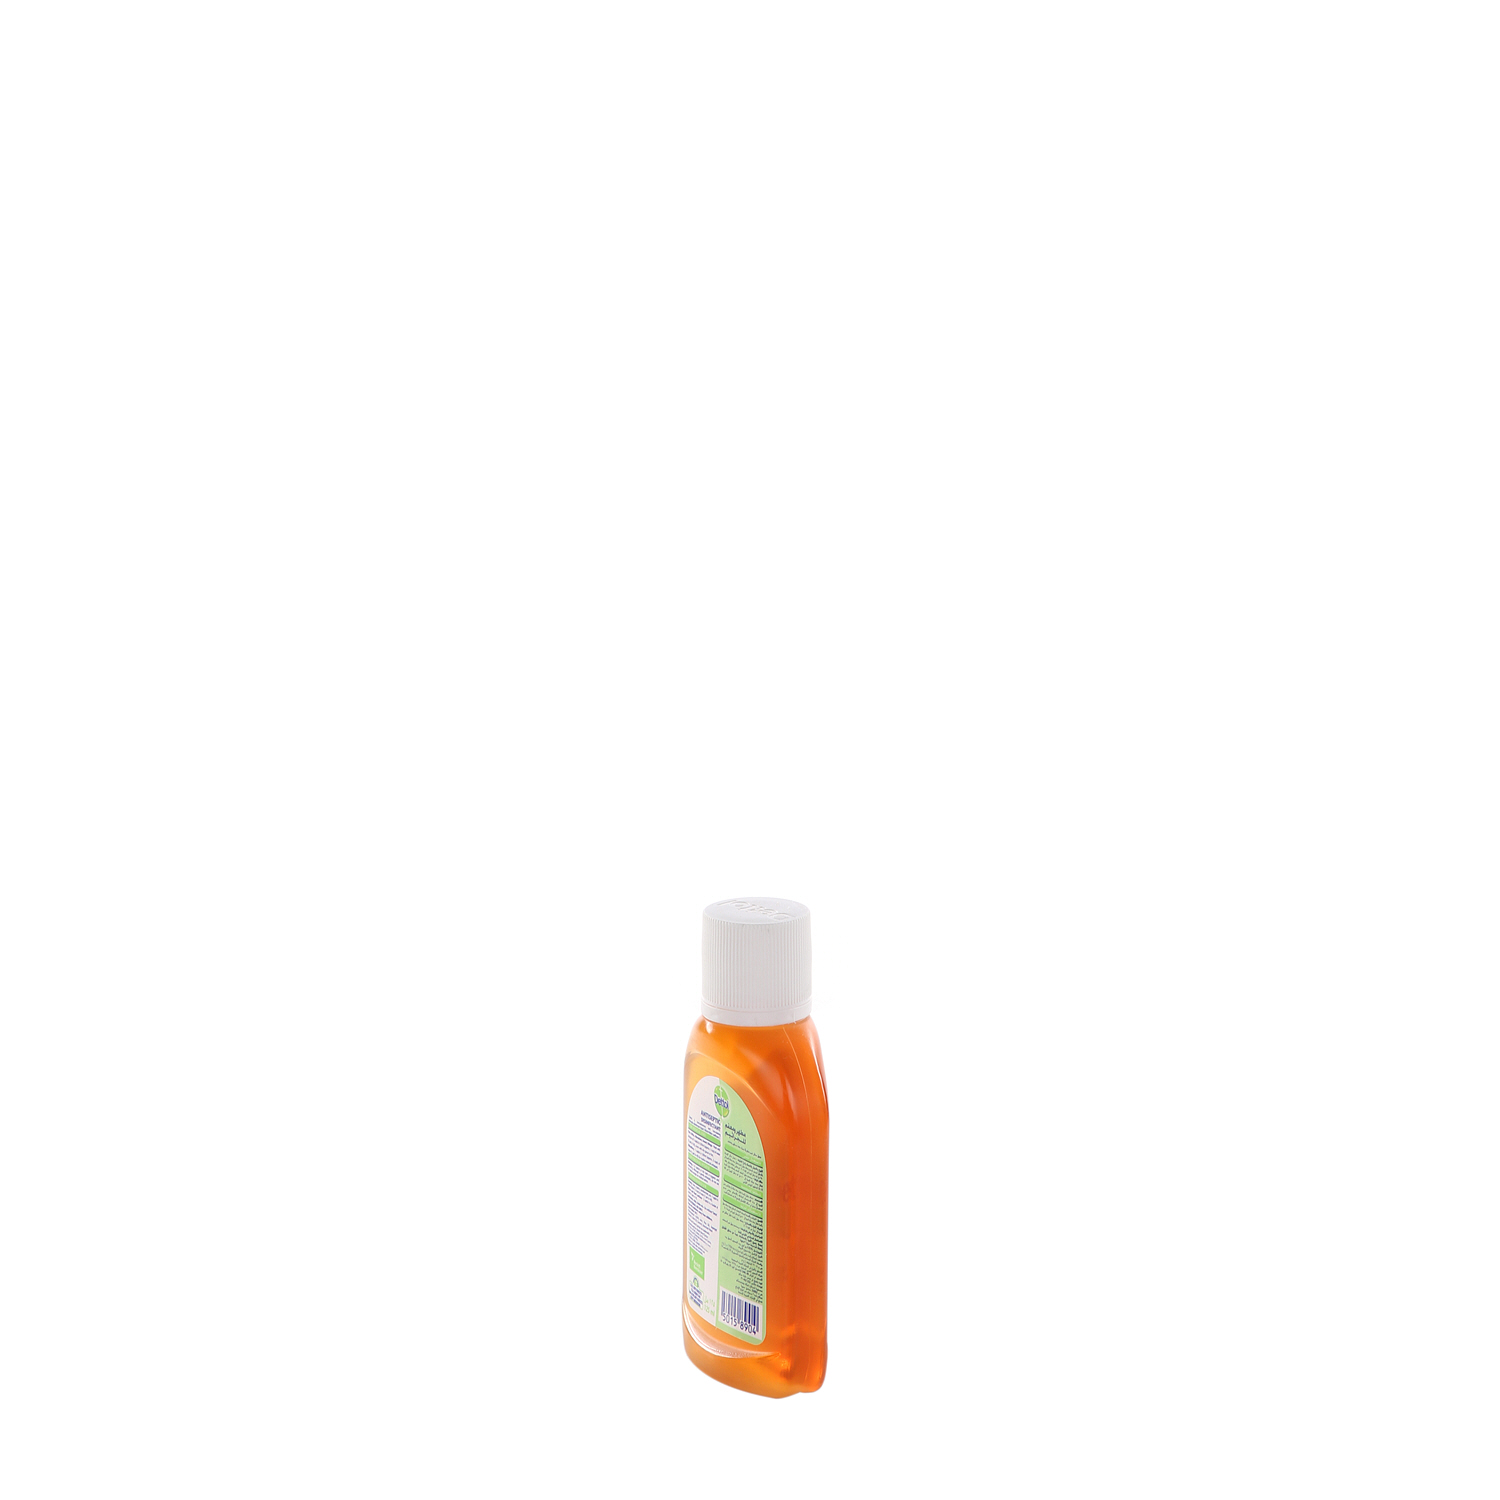 Dettol Anti-Bacterial Disinfectant Liquid 125 ml